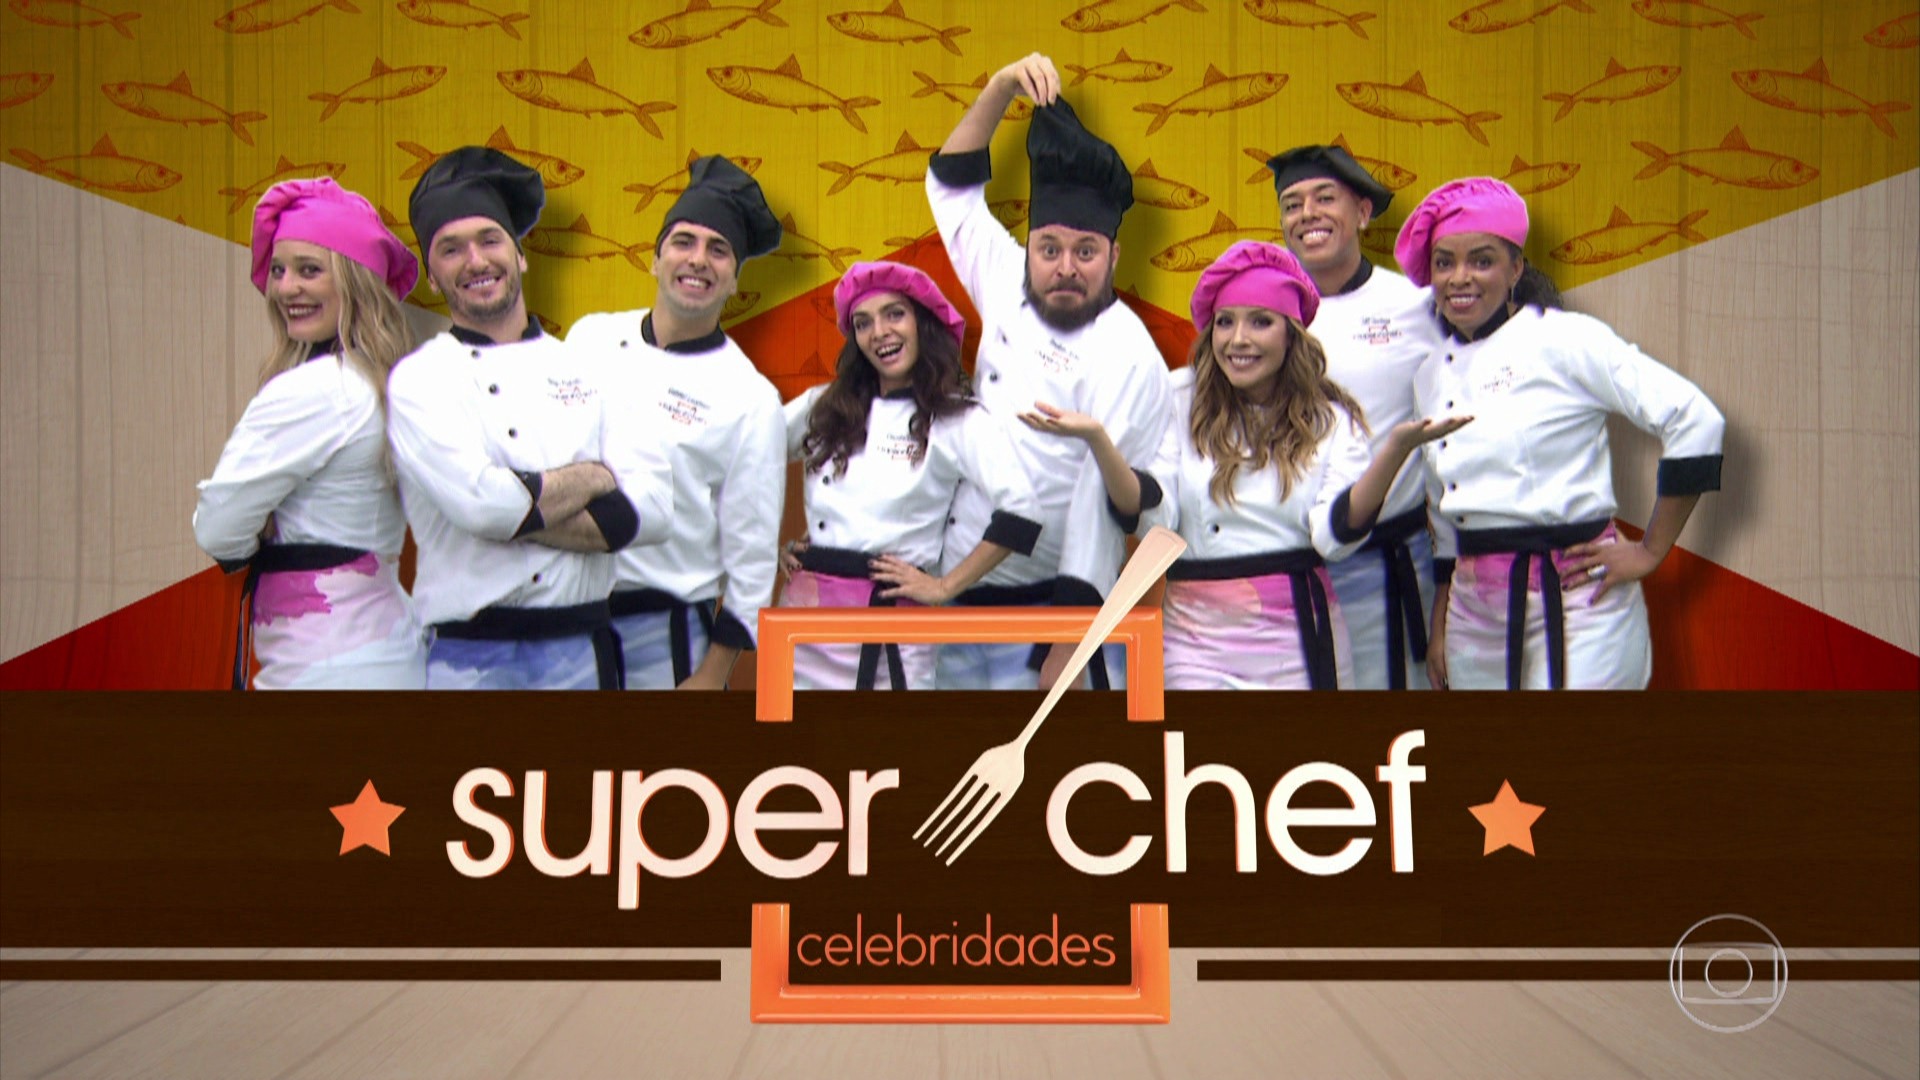 Diego Hypolito e Claudia Ohana disputam a primeira Panela de Pressão do Super Chef Celebridades